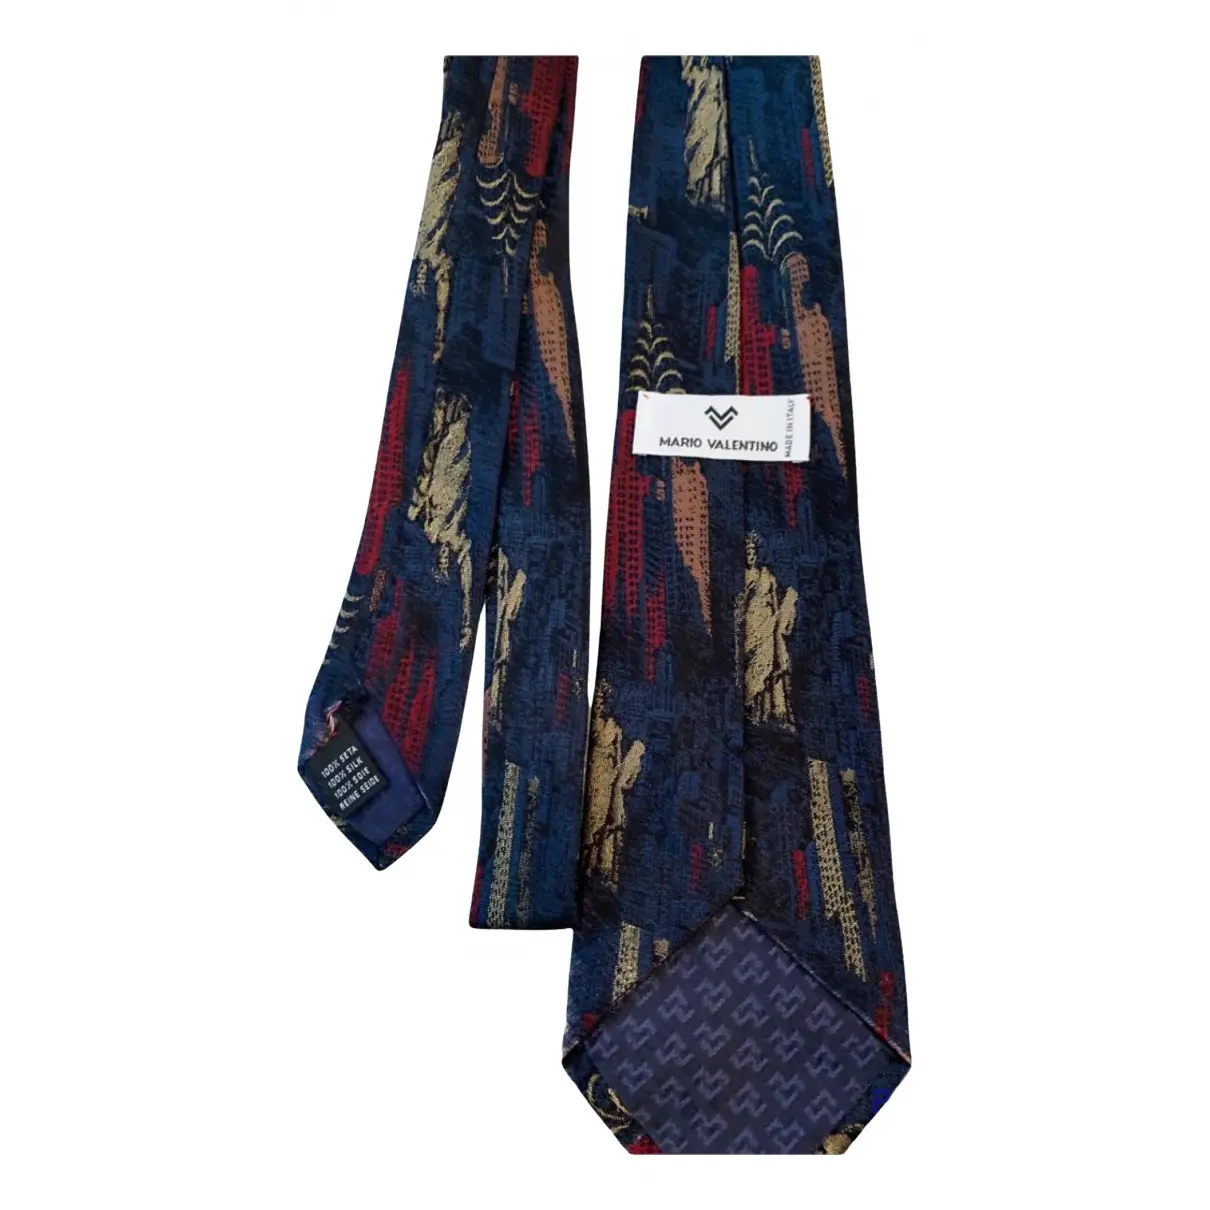 Buy MARIO VALENTINO Silk tie online - Vintage